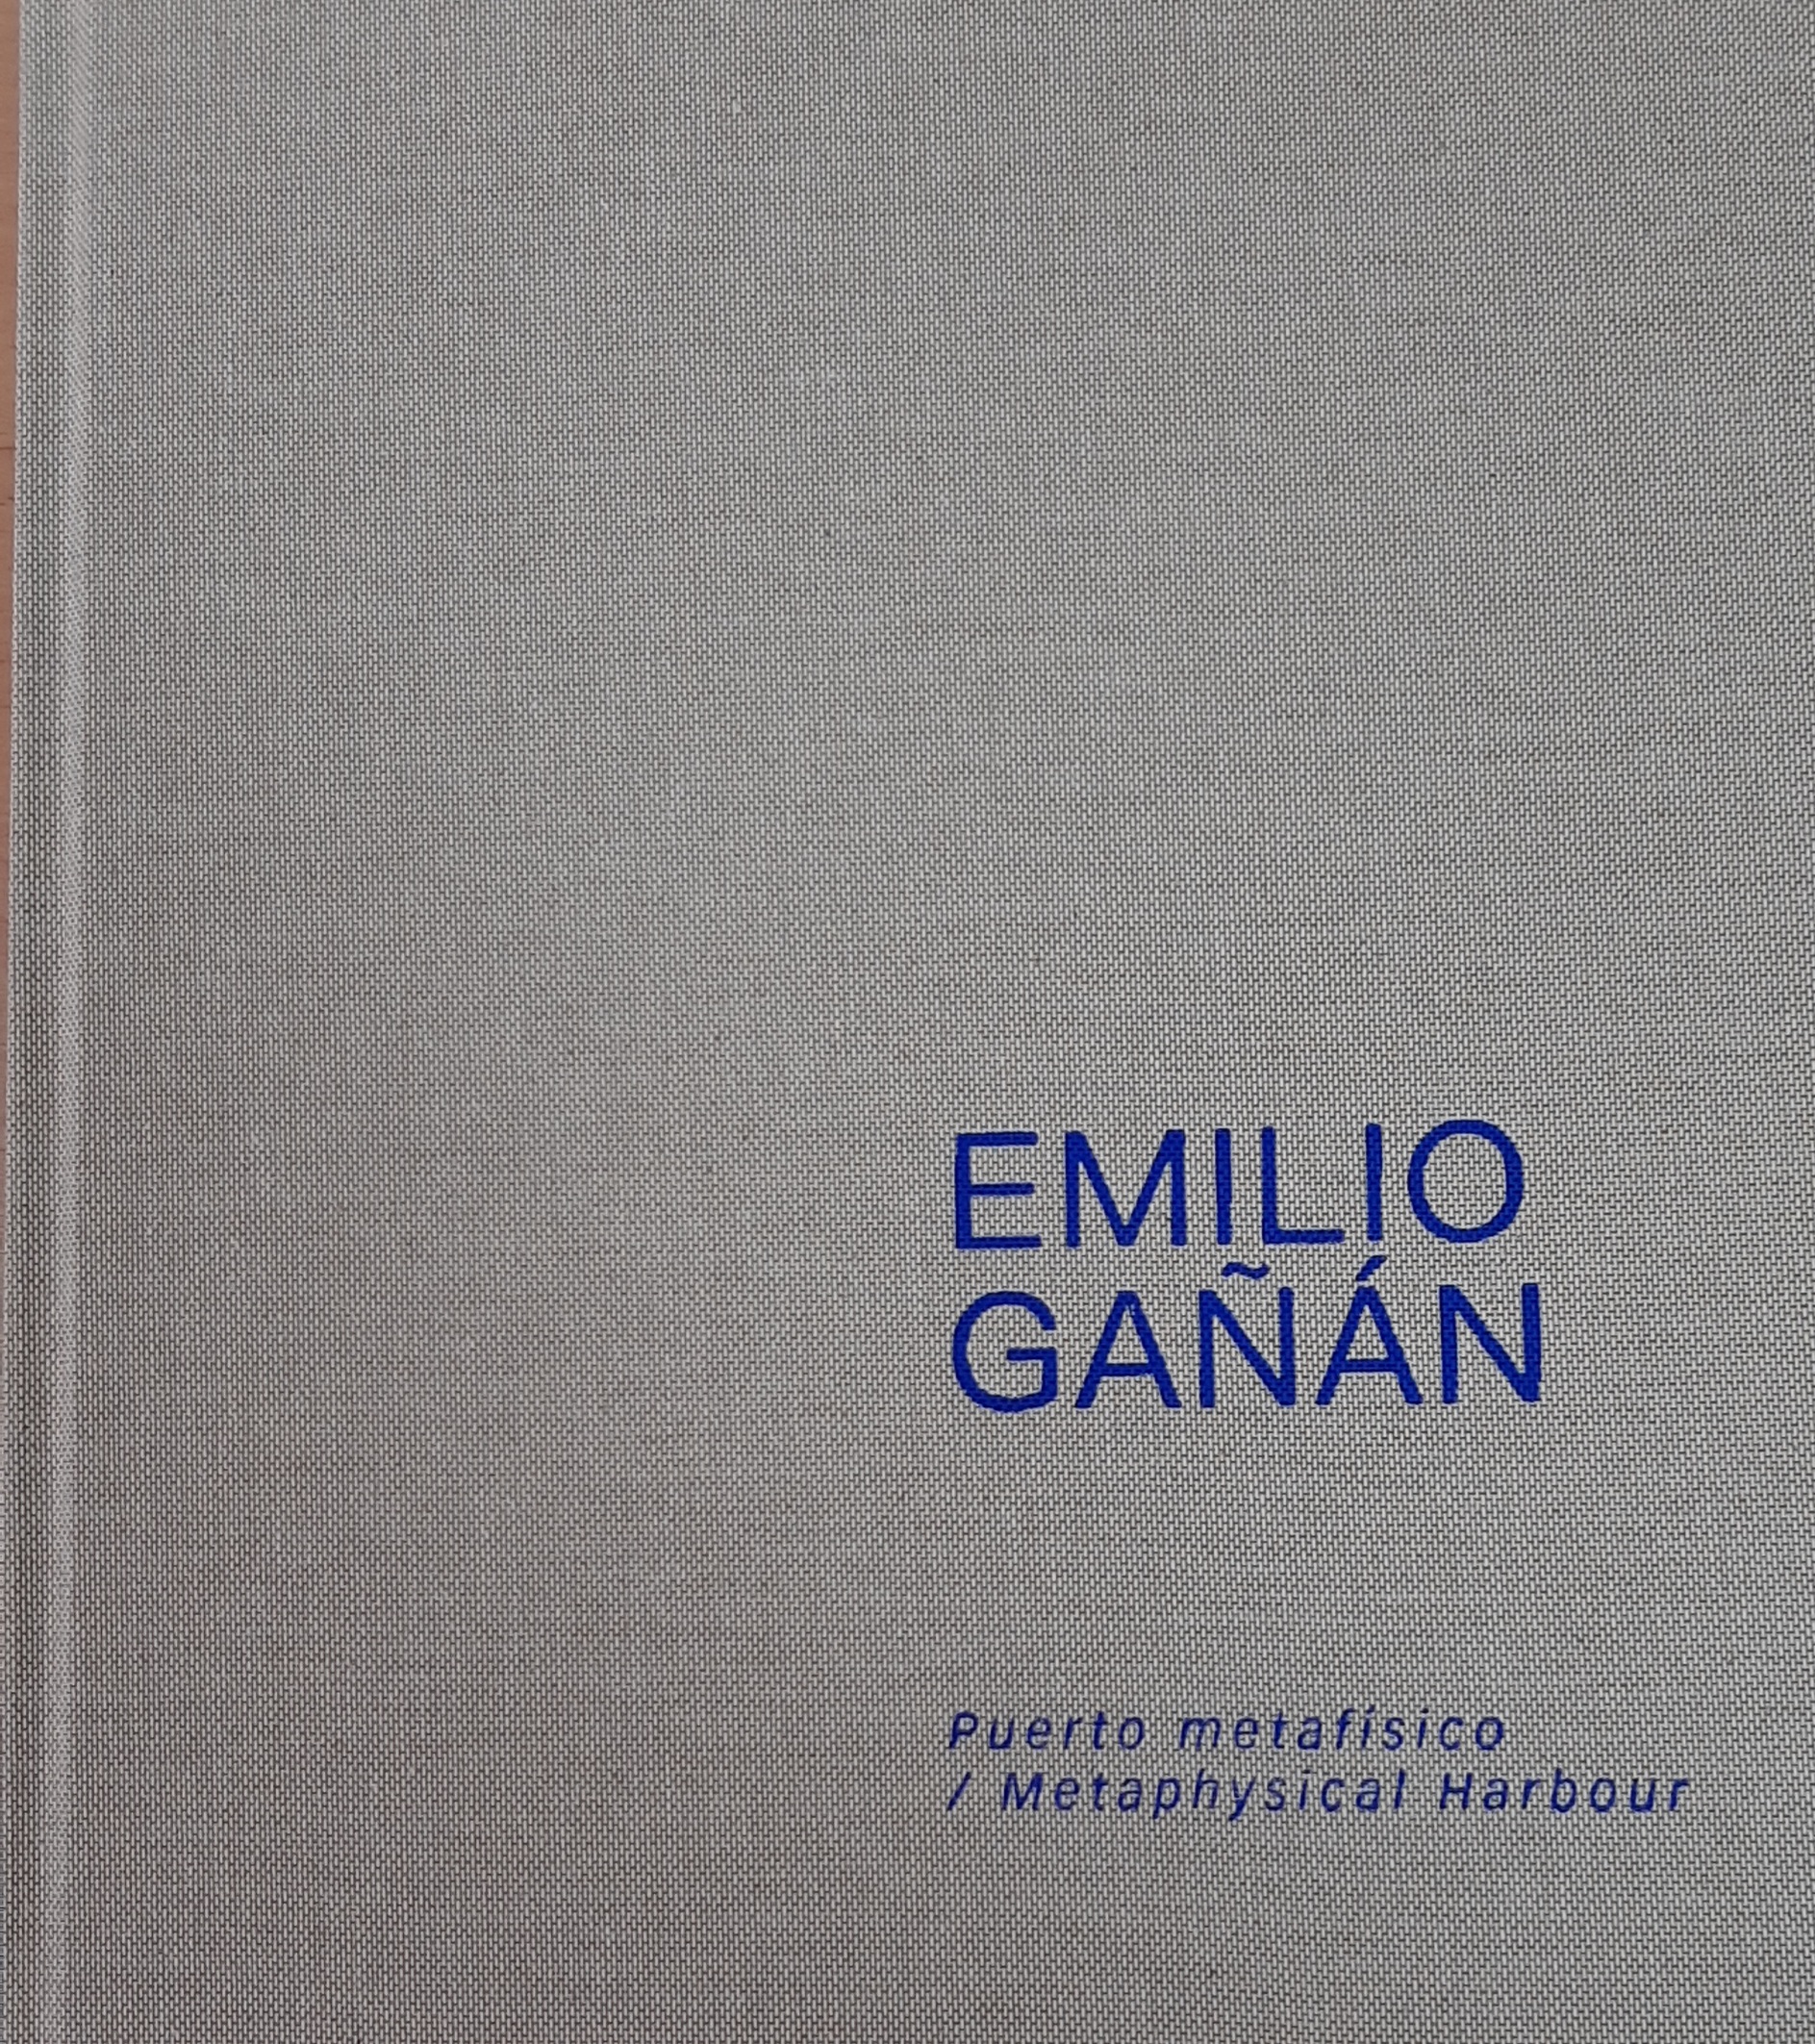 Imagen de portada del libro Emilio Gañán, puerto metafísico